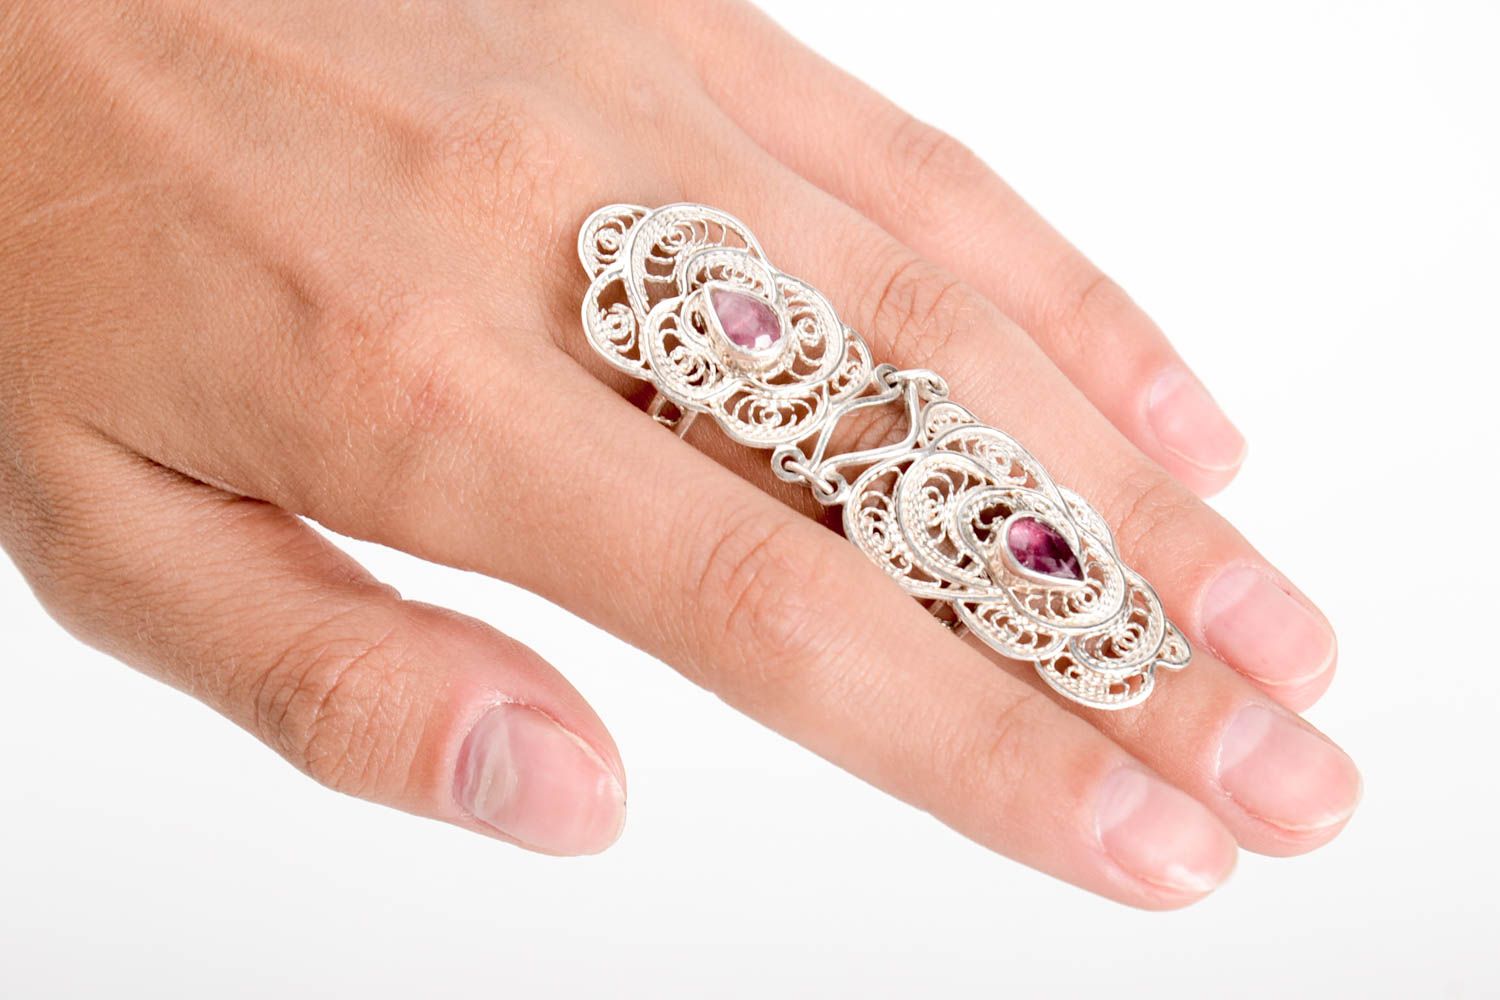 Женские кольца ручной работы кольца из серебра элитная бижутерия кольца с камнем фото 1